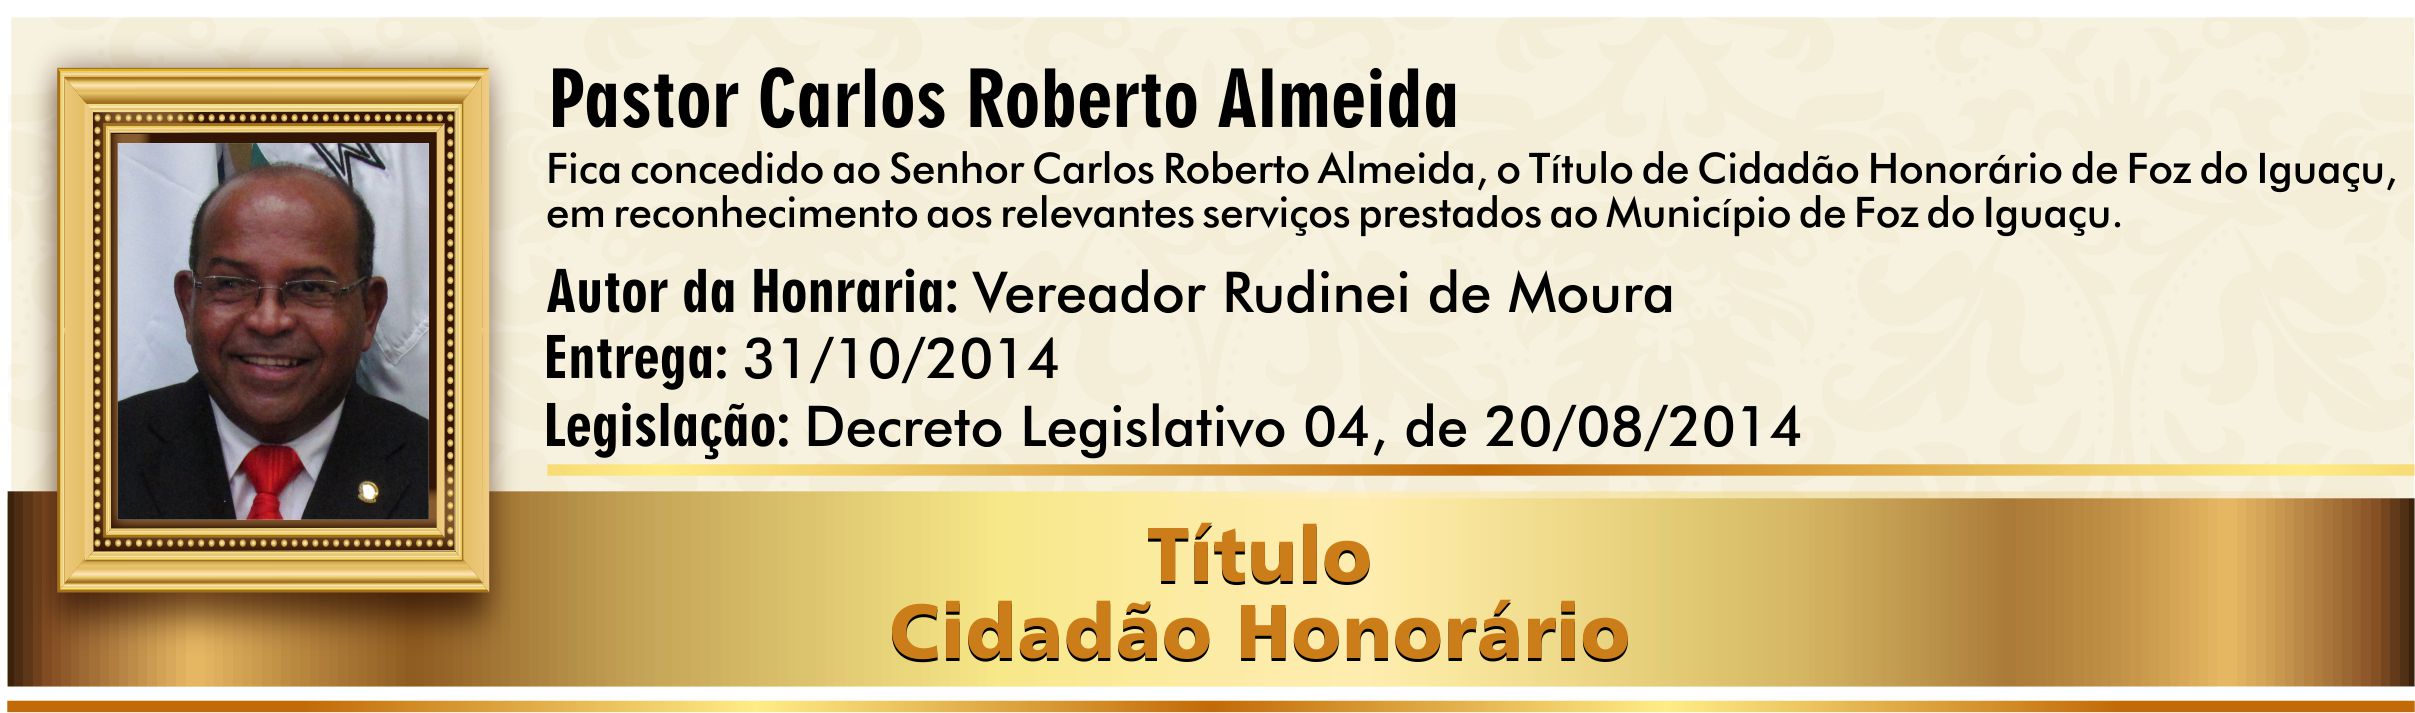 Pastor Carlos Roberto Almeida